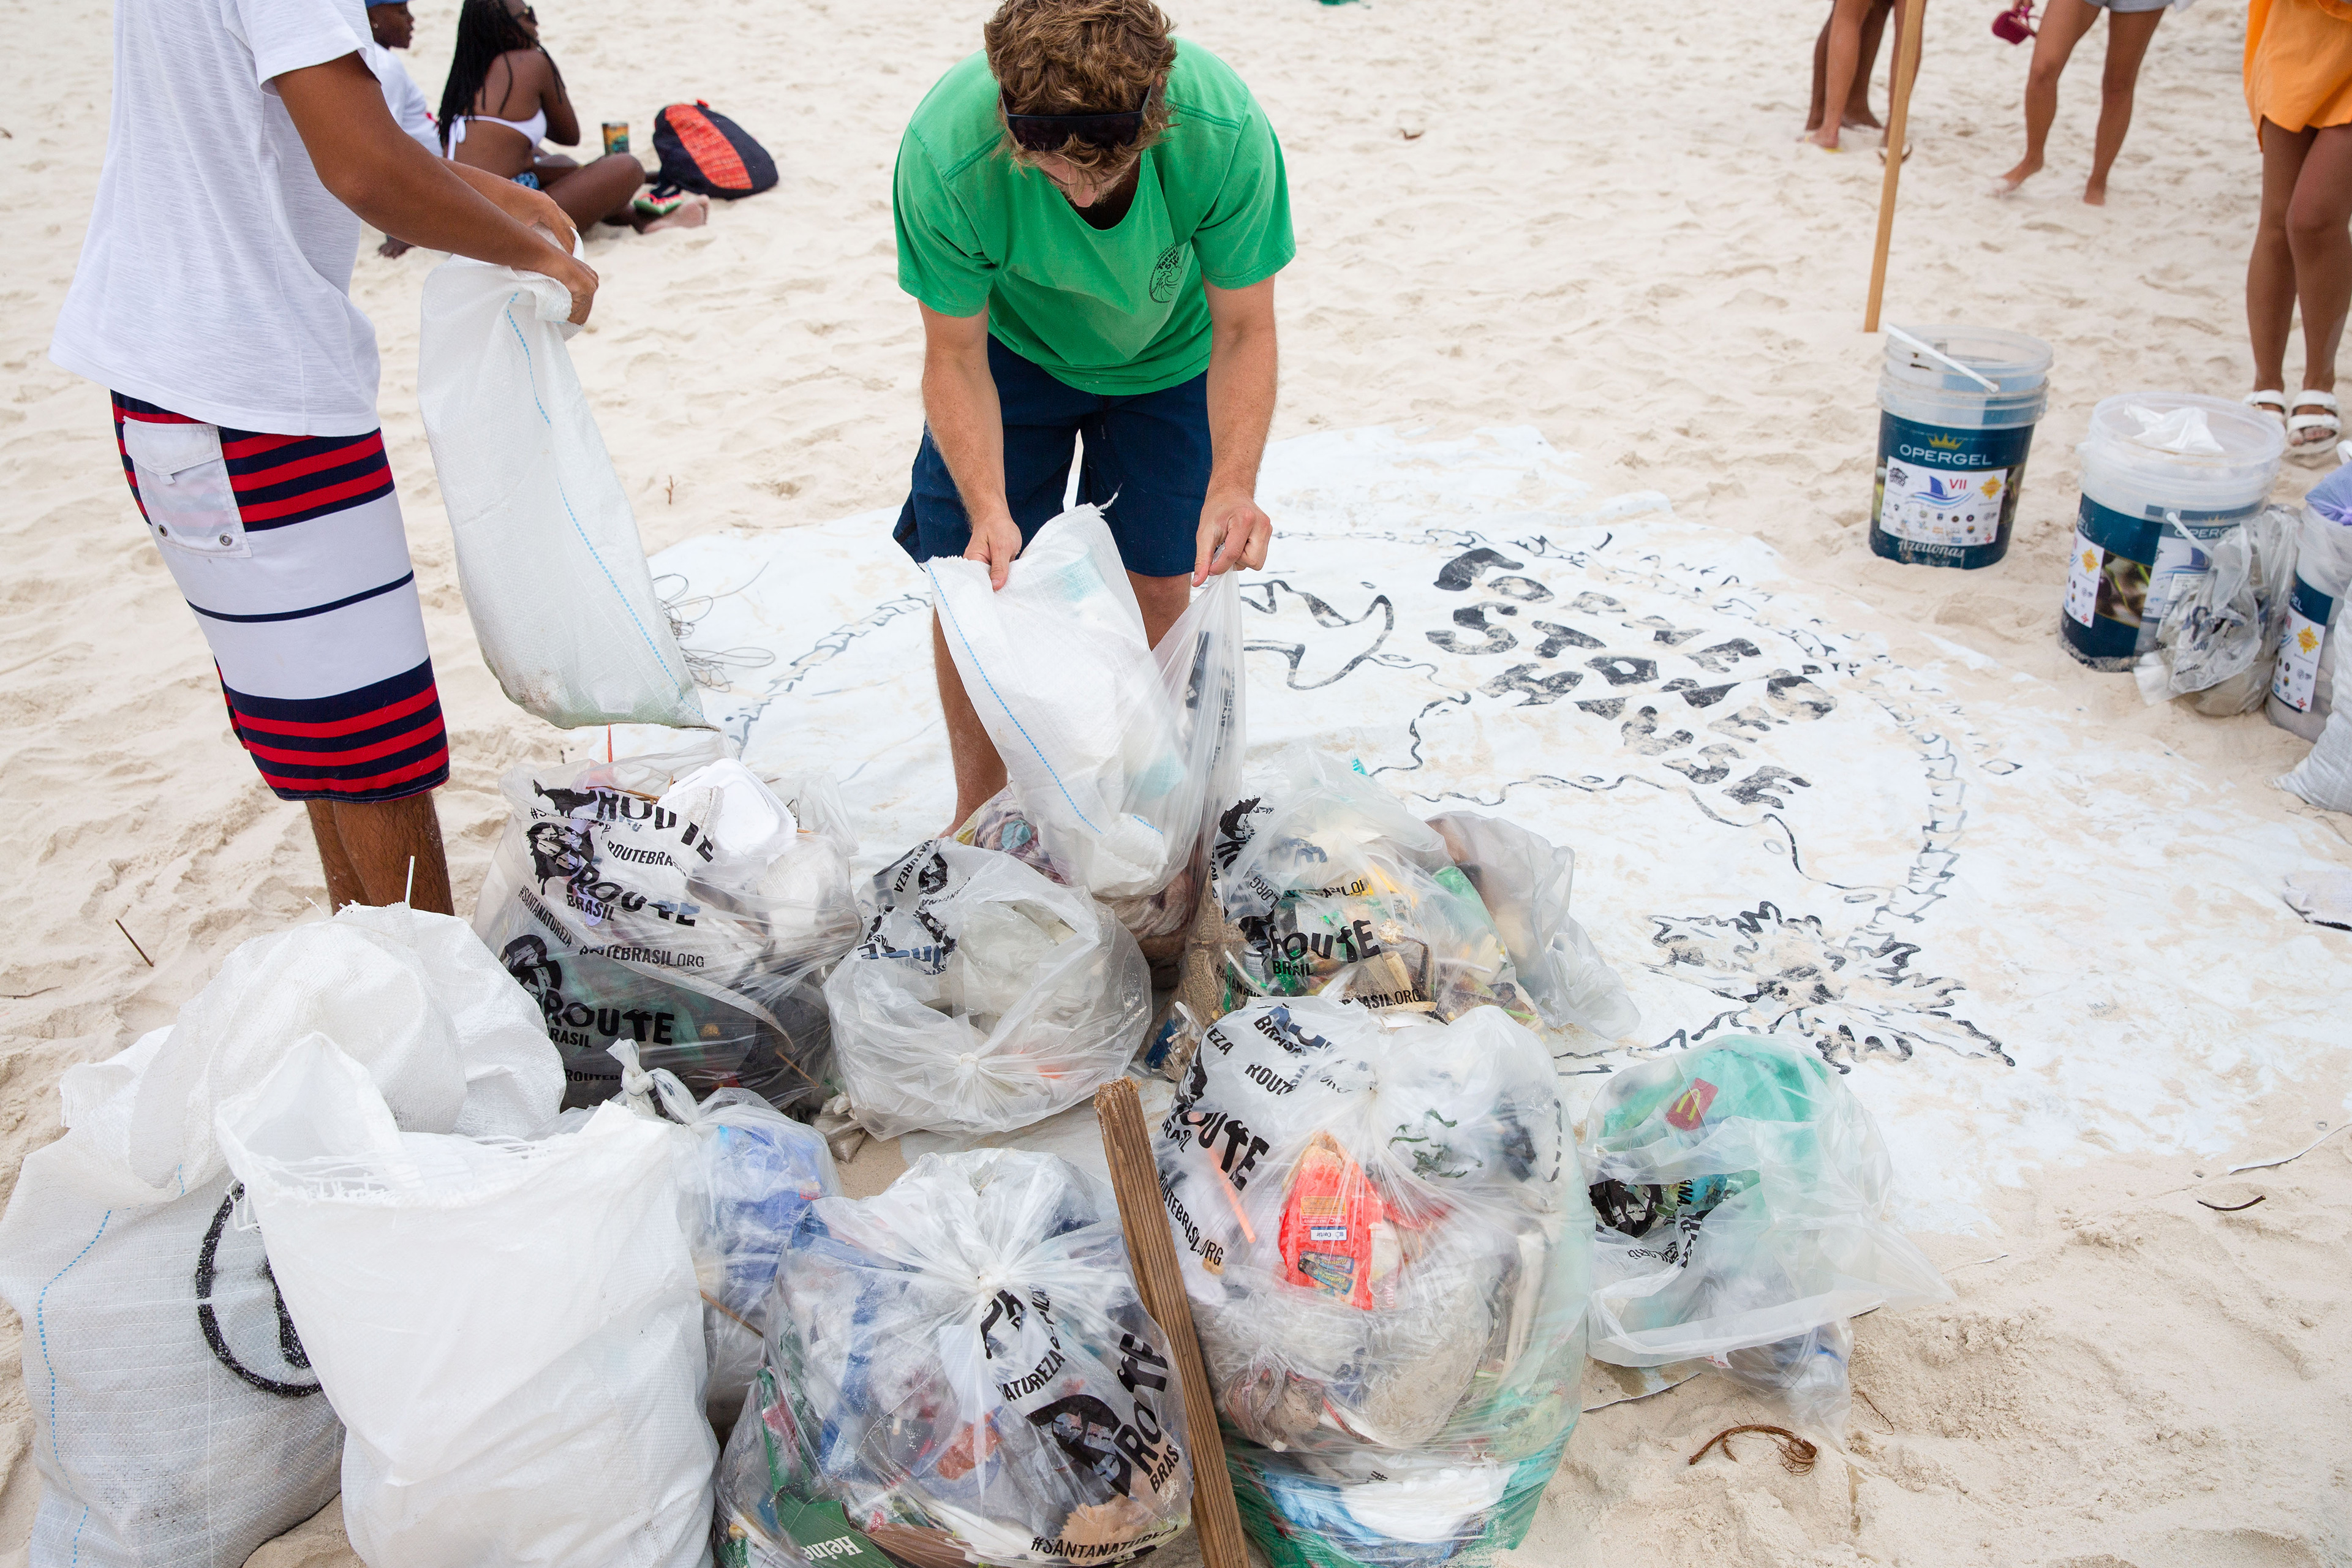 Tradição do evento, o UniSurf realiza diversas ações socioambientais na praia.